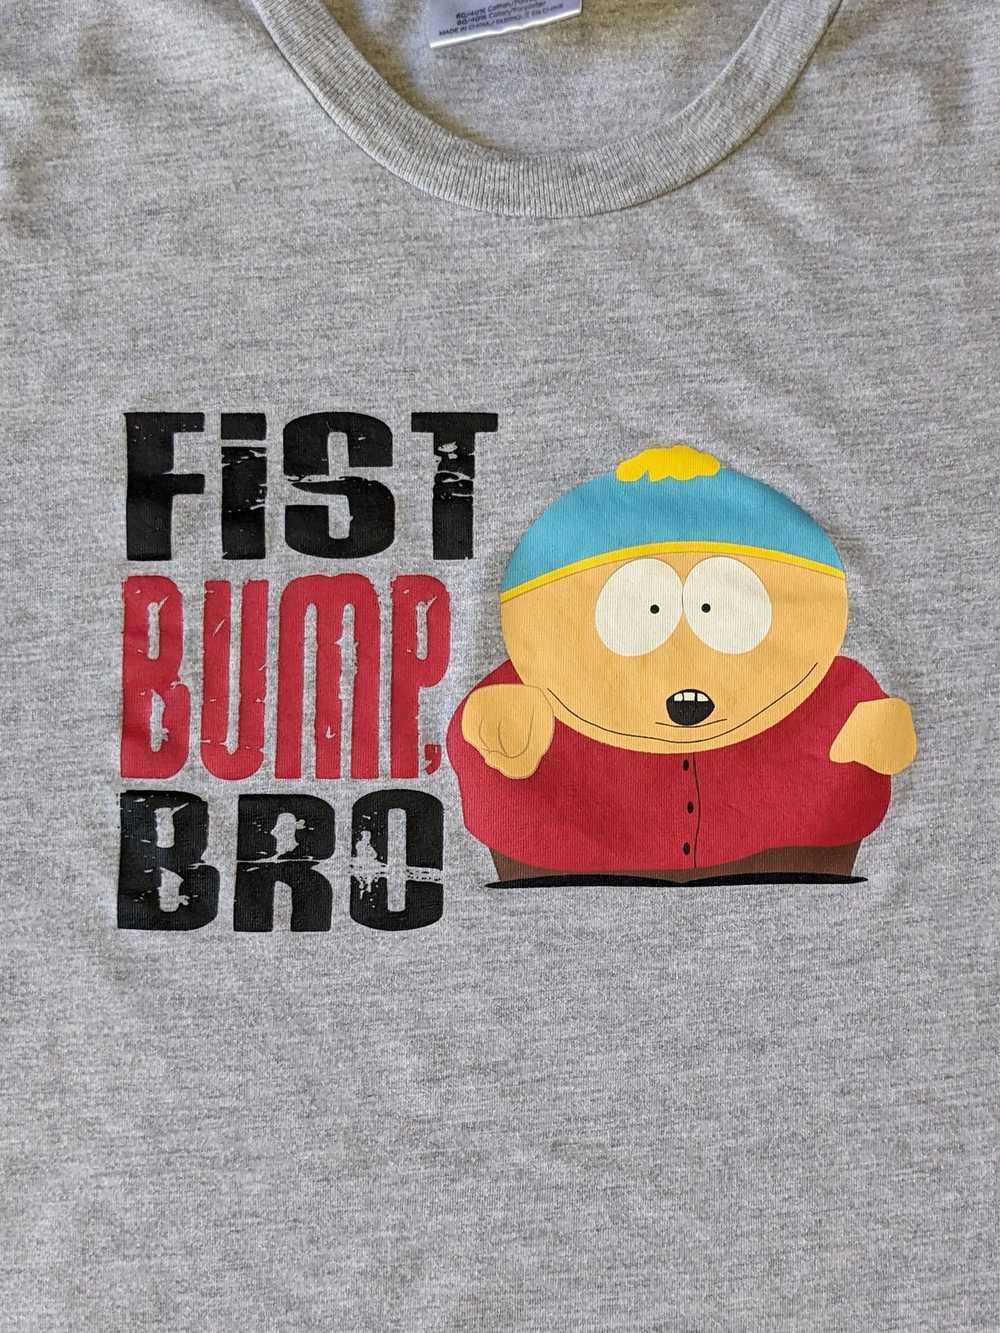 Other South Park Eric Cartman Fist Bump Bro t-shi… - image 2